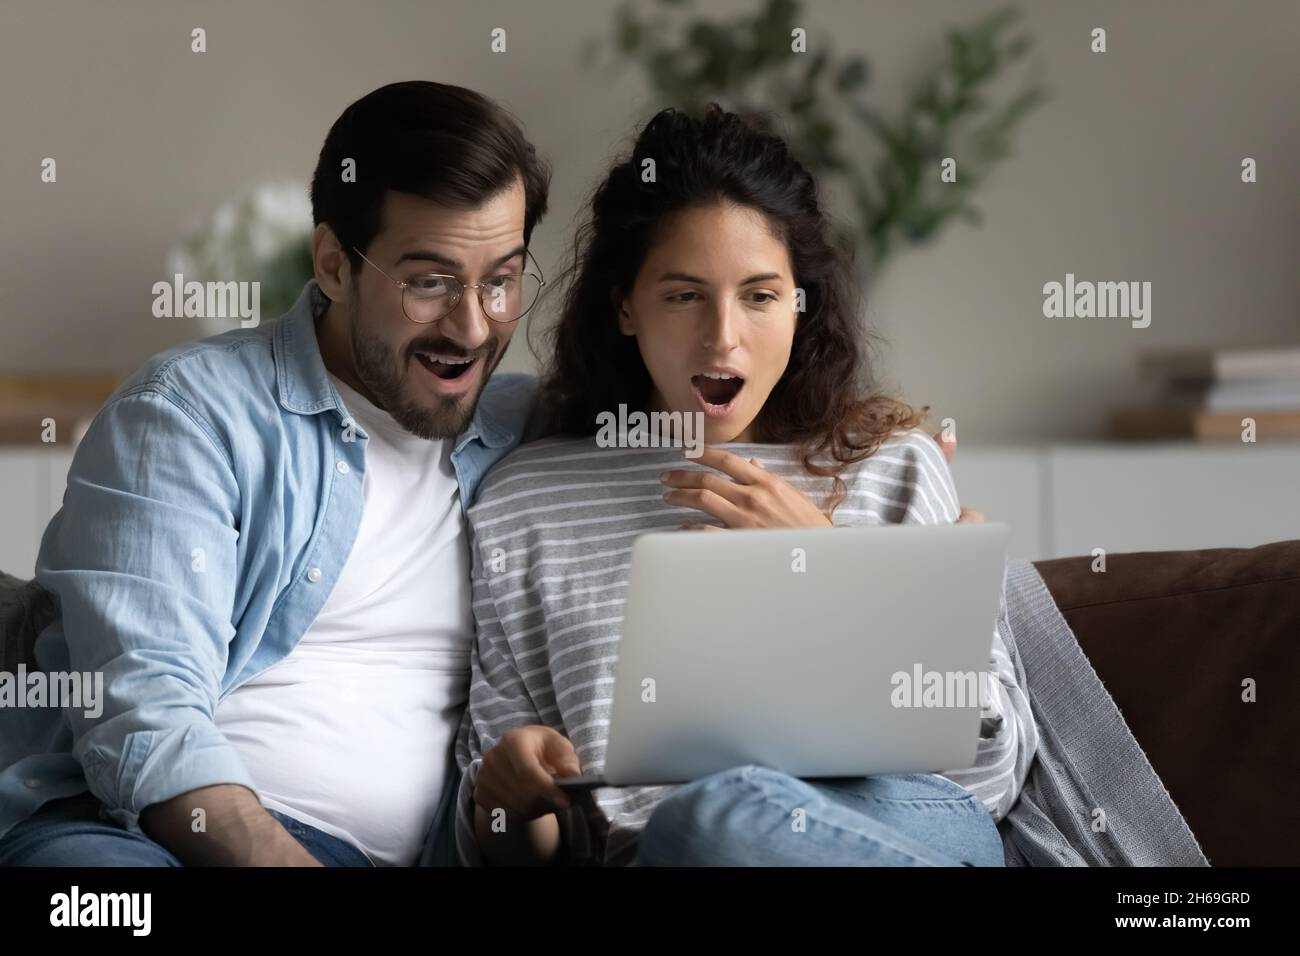 Un jeune couple choqué et débordant de joie à regarder sur un ordinateur portable, à lire des nouvelles étonnantes Banque D'Images